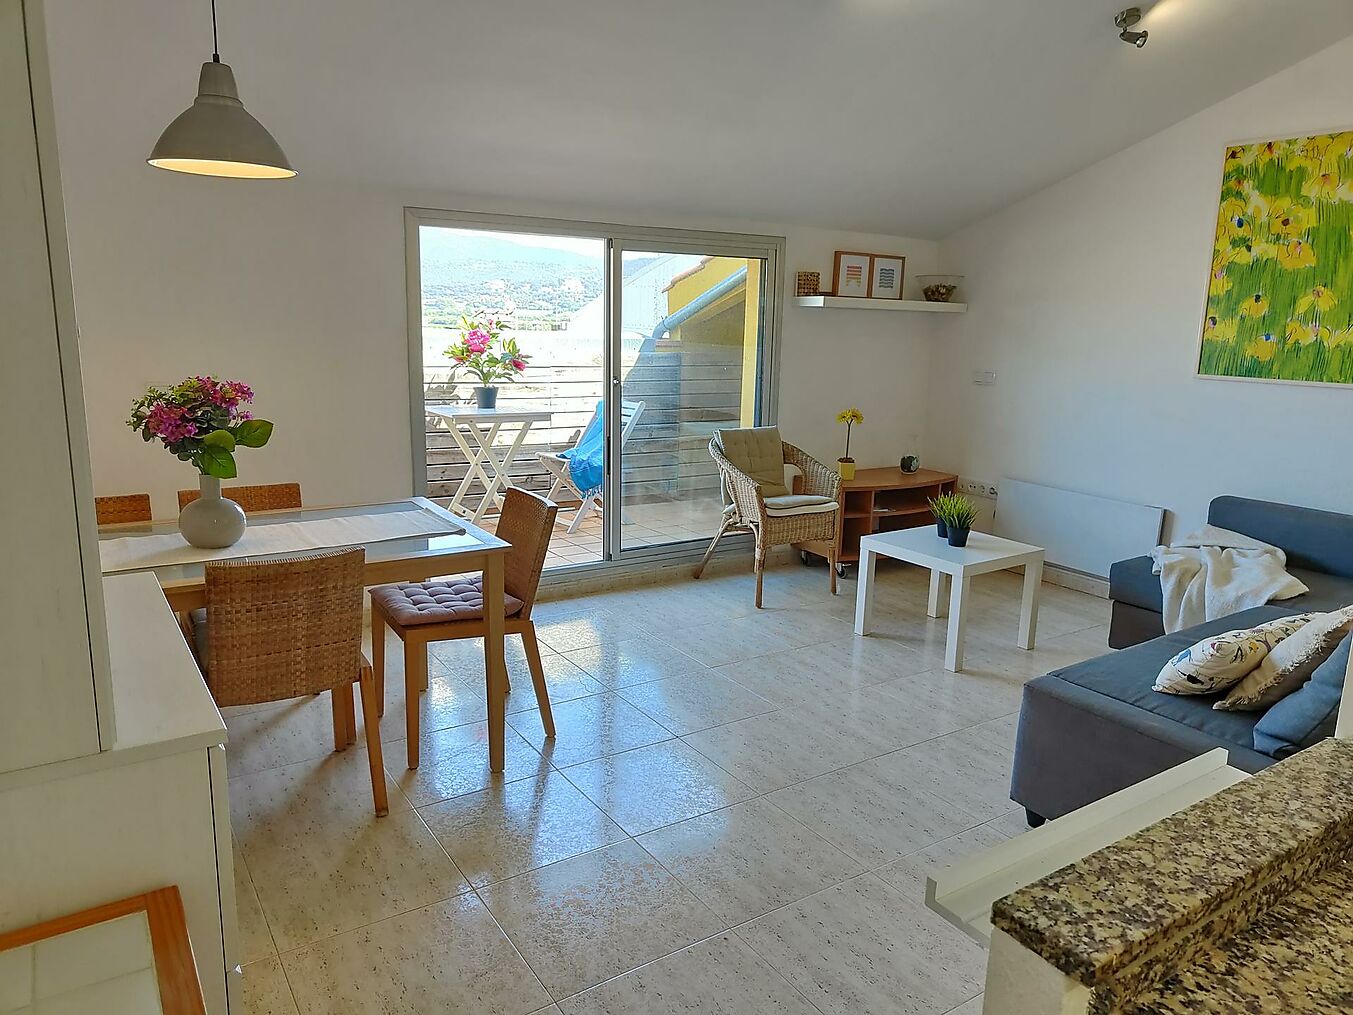 Apartamento tipo dúplex situado en segunda línea de mar en el centro de Sant Antoni